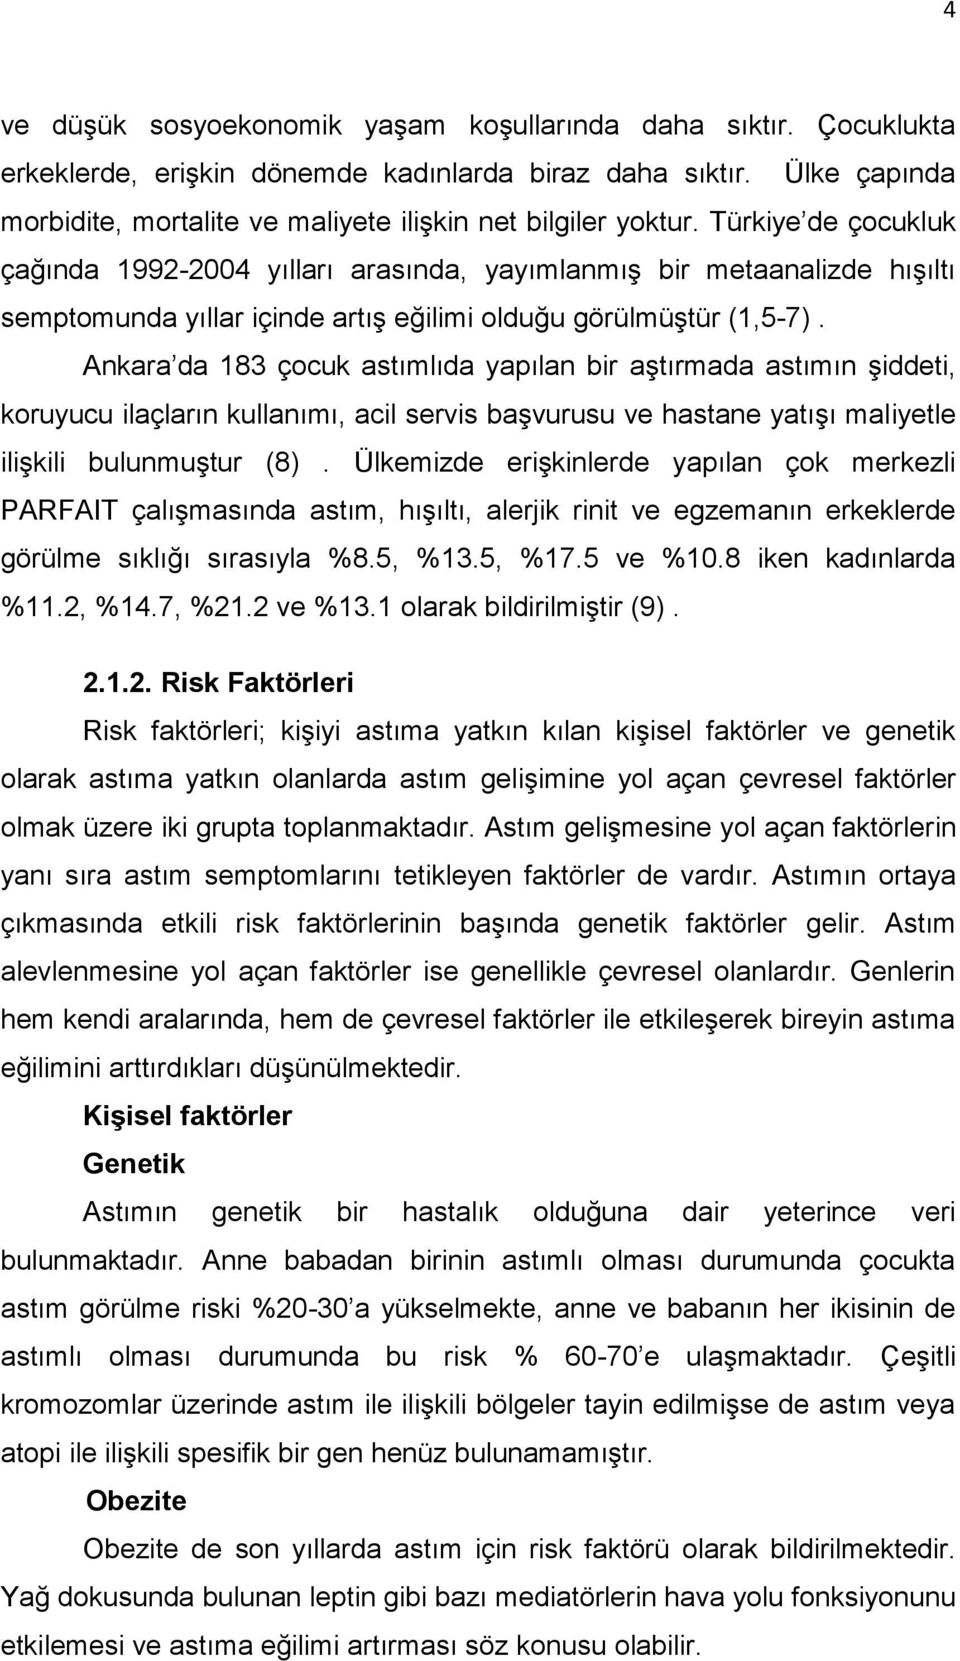 Ankara da 183 çocuk astımlıda yapılan bir aştırmada astımın şiddeti, koruyucu ilaçların kullanımı, acil servis başvurusu ve hastane yatışı maliyetle ilişkili bulunmuştur (8).